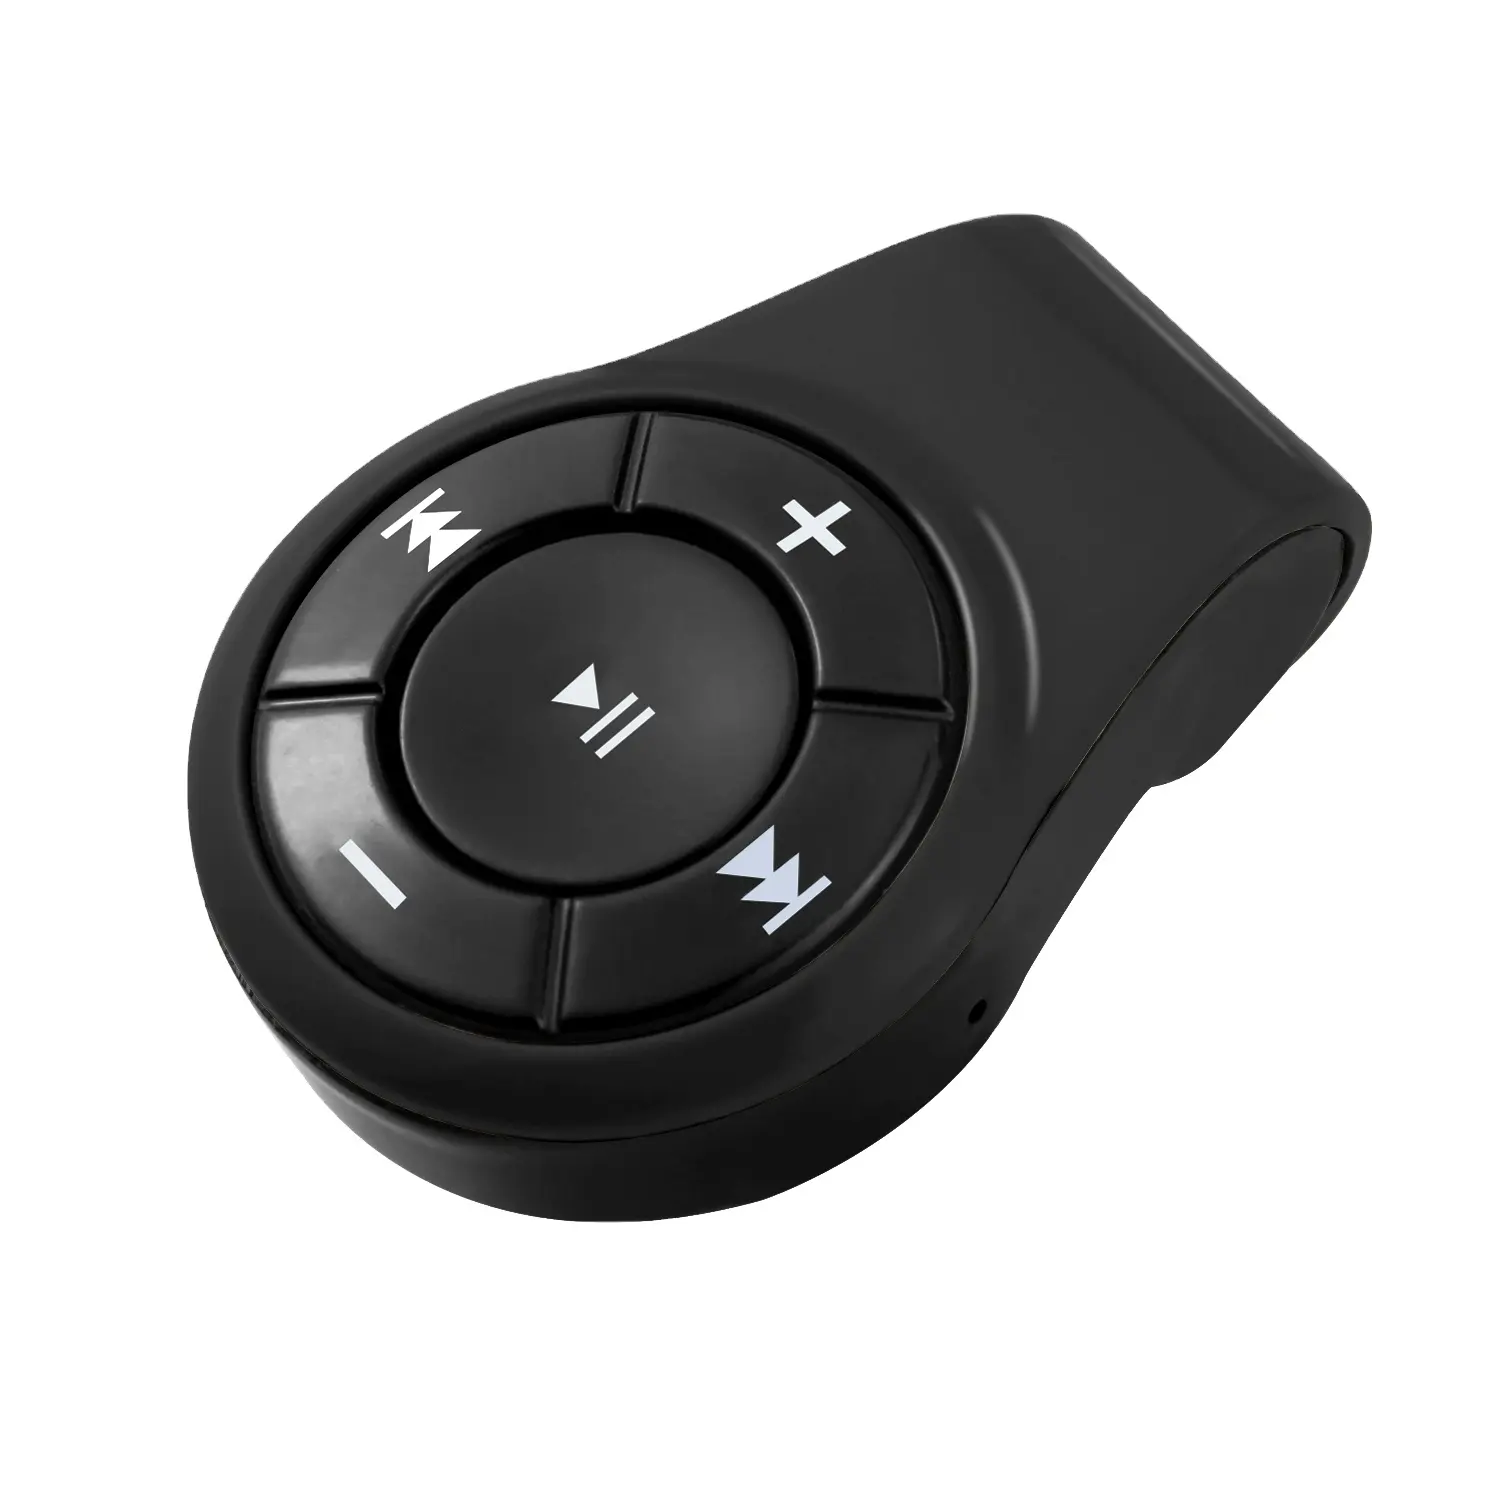 ハンズフリー通話および音楽Bluetoothトランスミッター用のMICを備えたミニクリップBluetoothオーディオアダプタースマートワイヤレスレシーバー